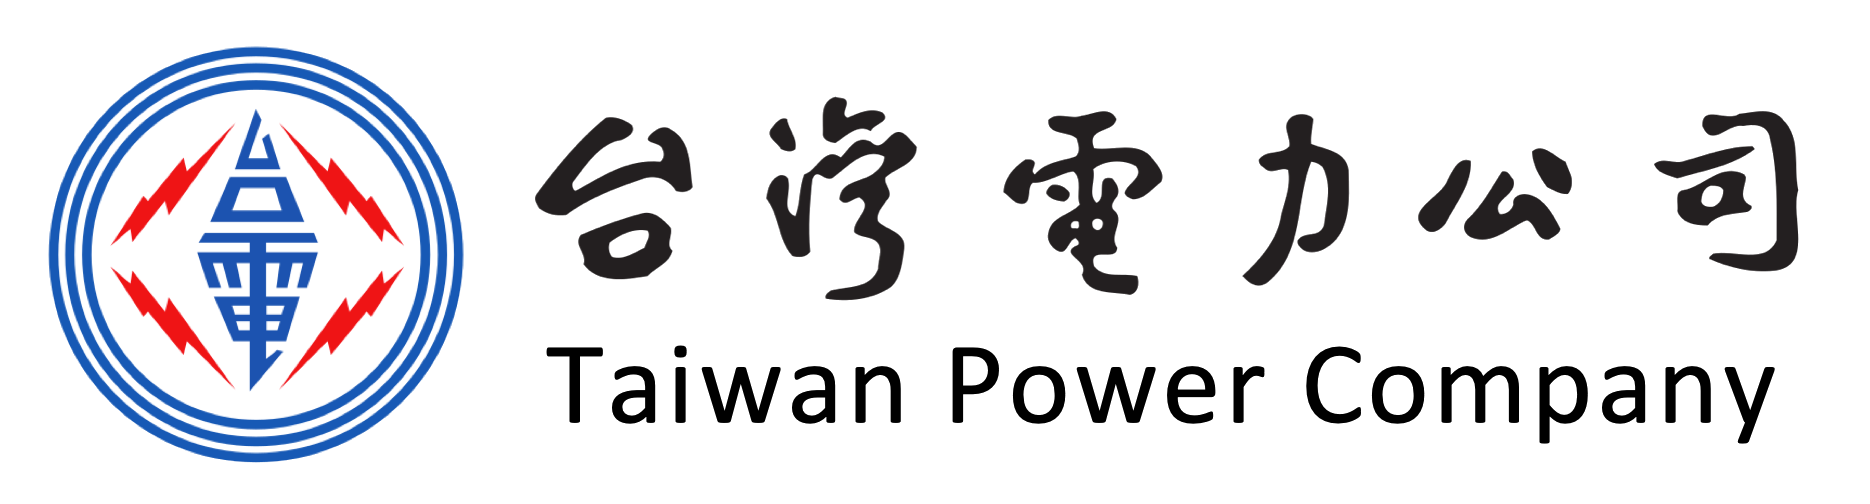 台灣電力公司